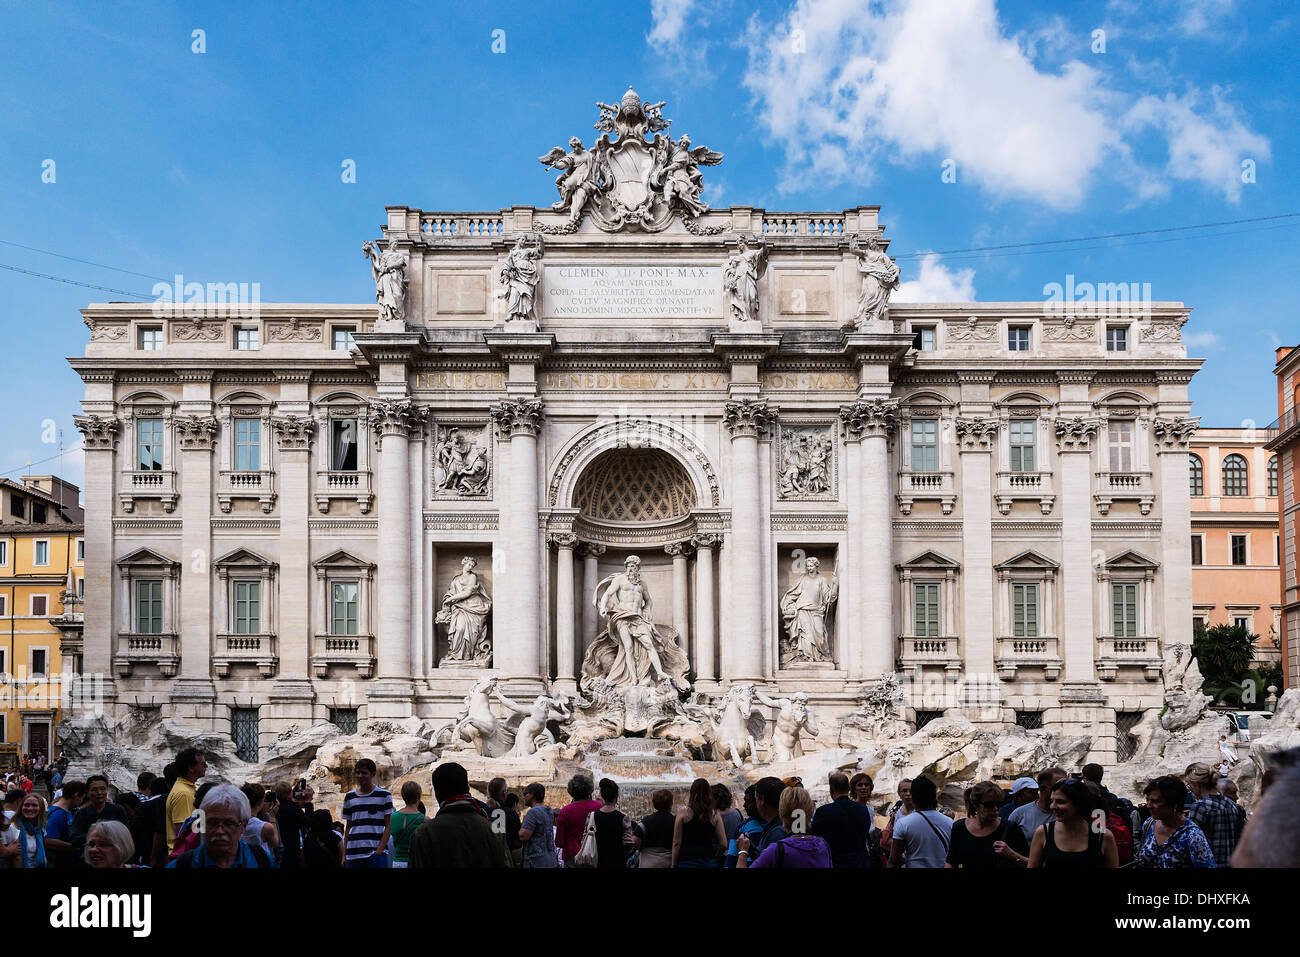 Les touristes se rassemblent pour admirer la fontaine de Trevi, Rome, Italie Banque D'Images